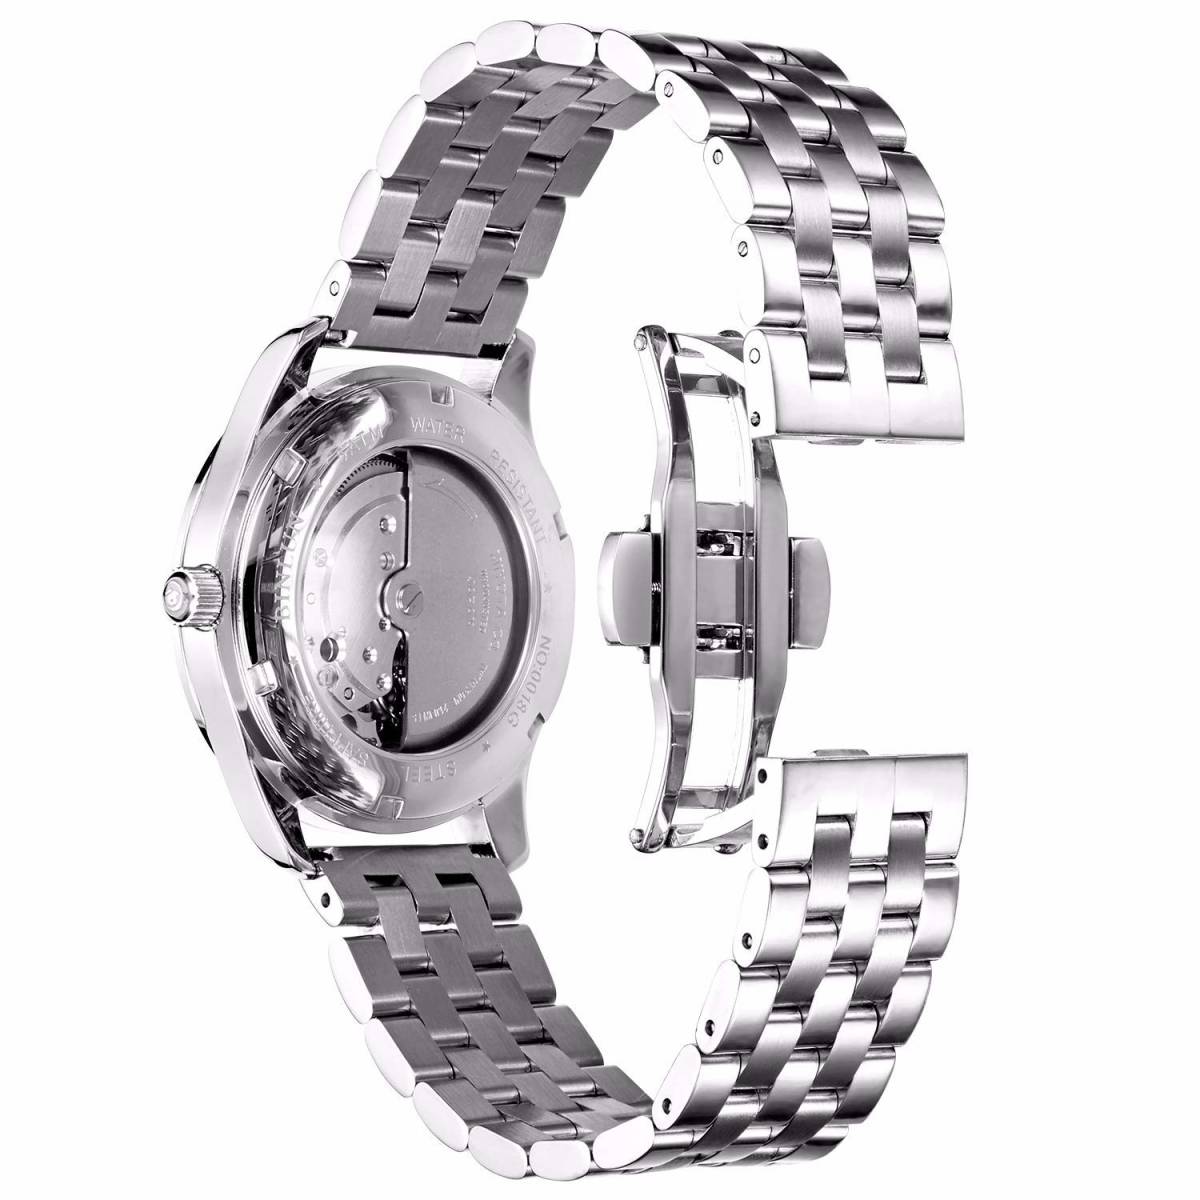 [ следующий раз поступление нет ] часы браслет часы частота мужской женские наручные часы ремень metal металл замена ремень 18mm,19mm,20m